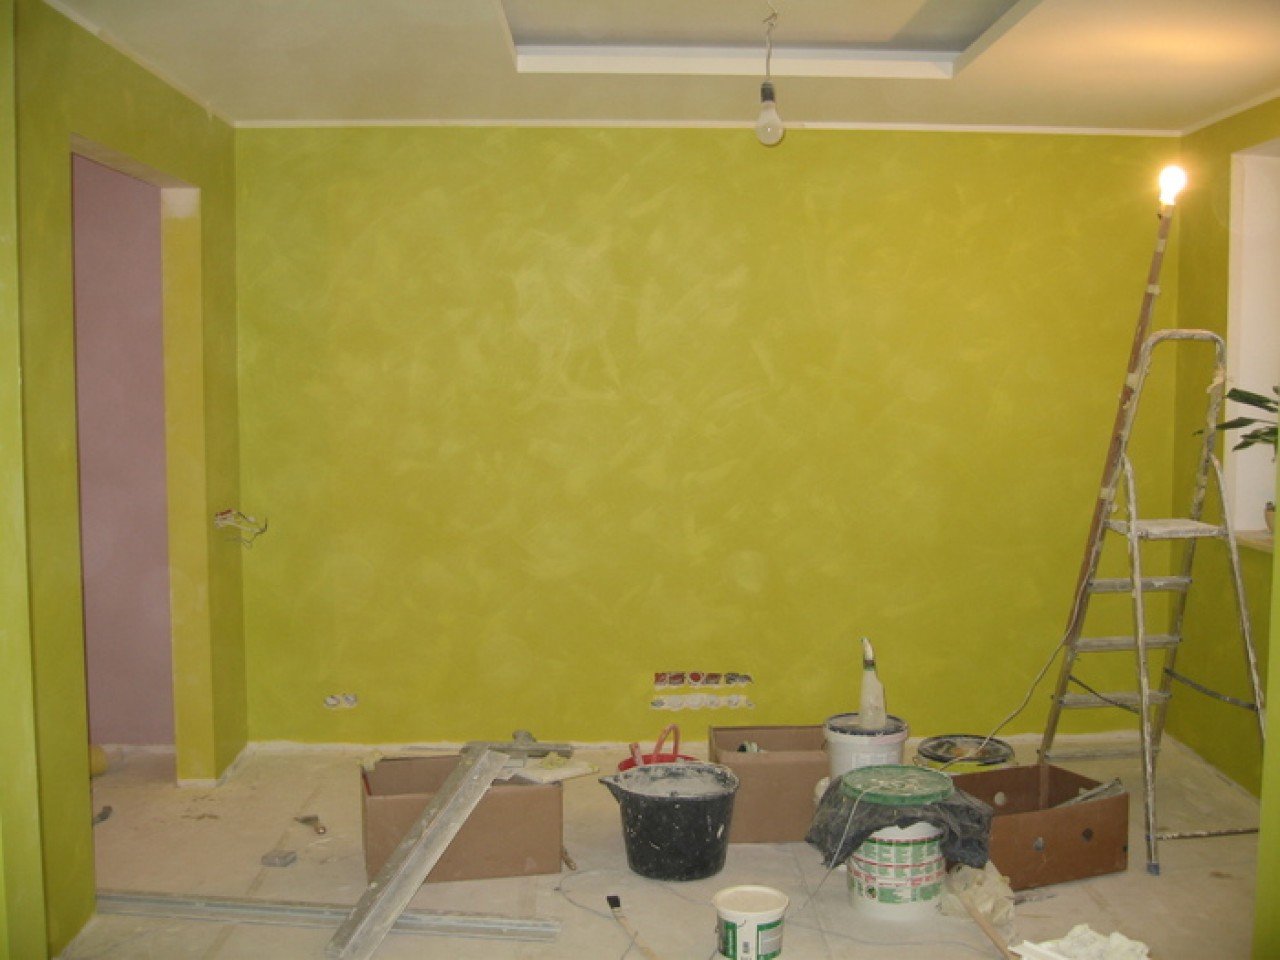 Лучшие краски для покраски обоев. Покраска стен. Покрашенные стены. Покрашенные стены в квартире. Красивая краска для стен в квартире.